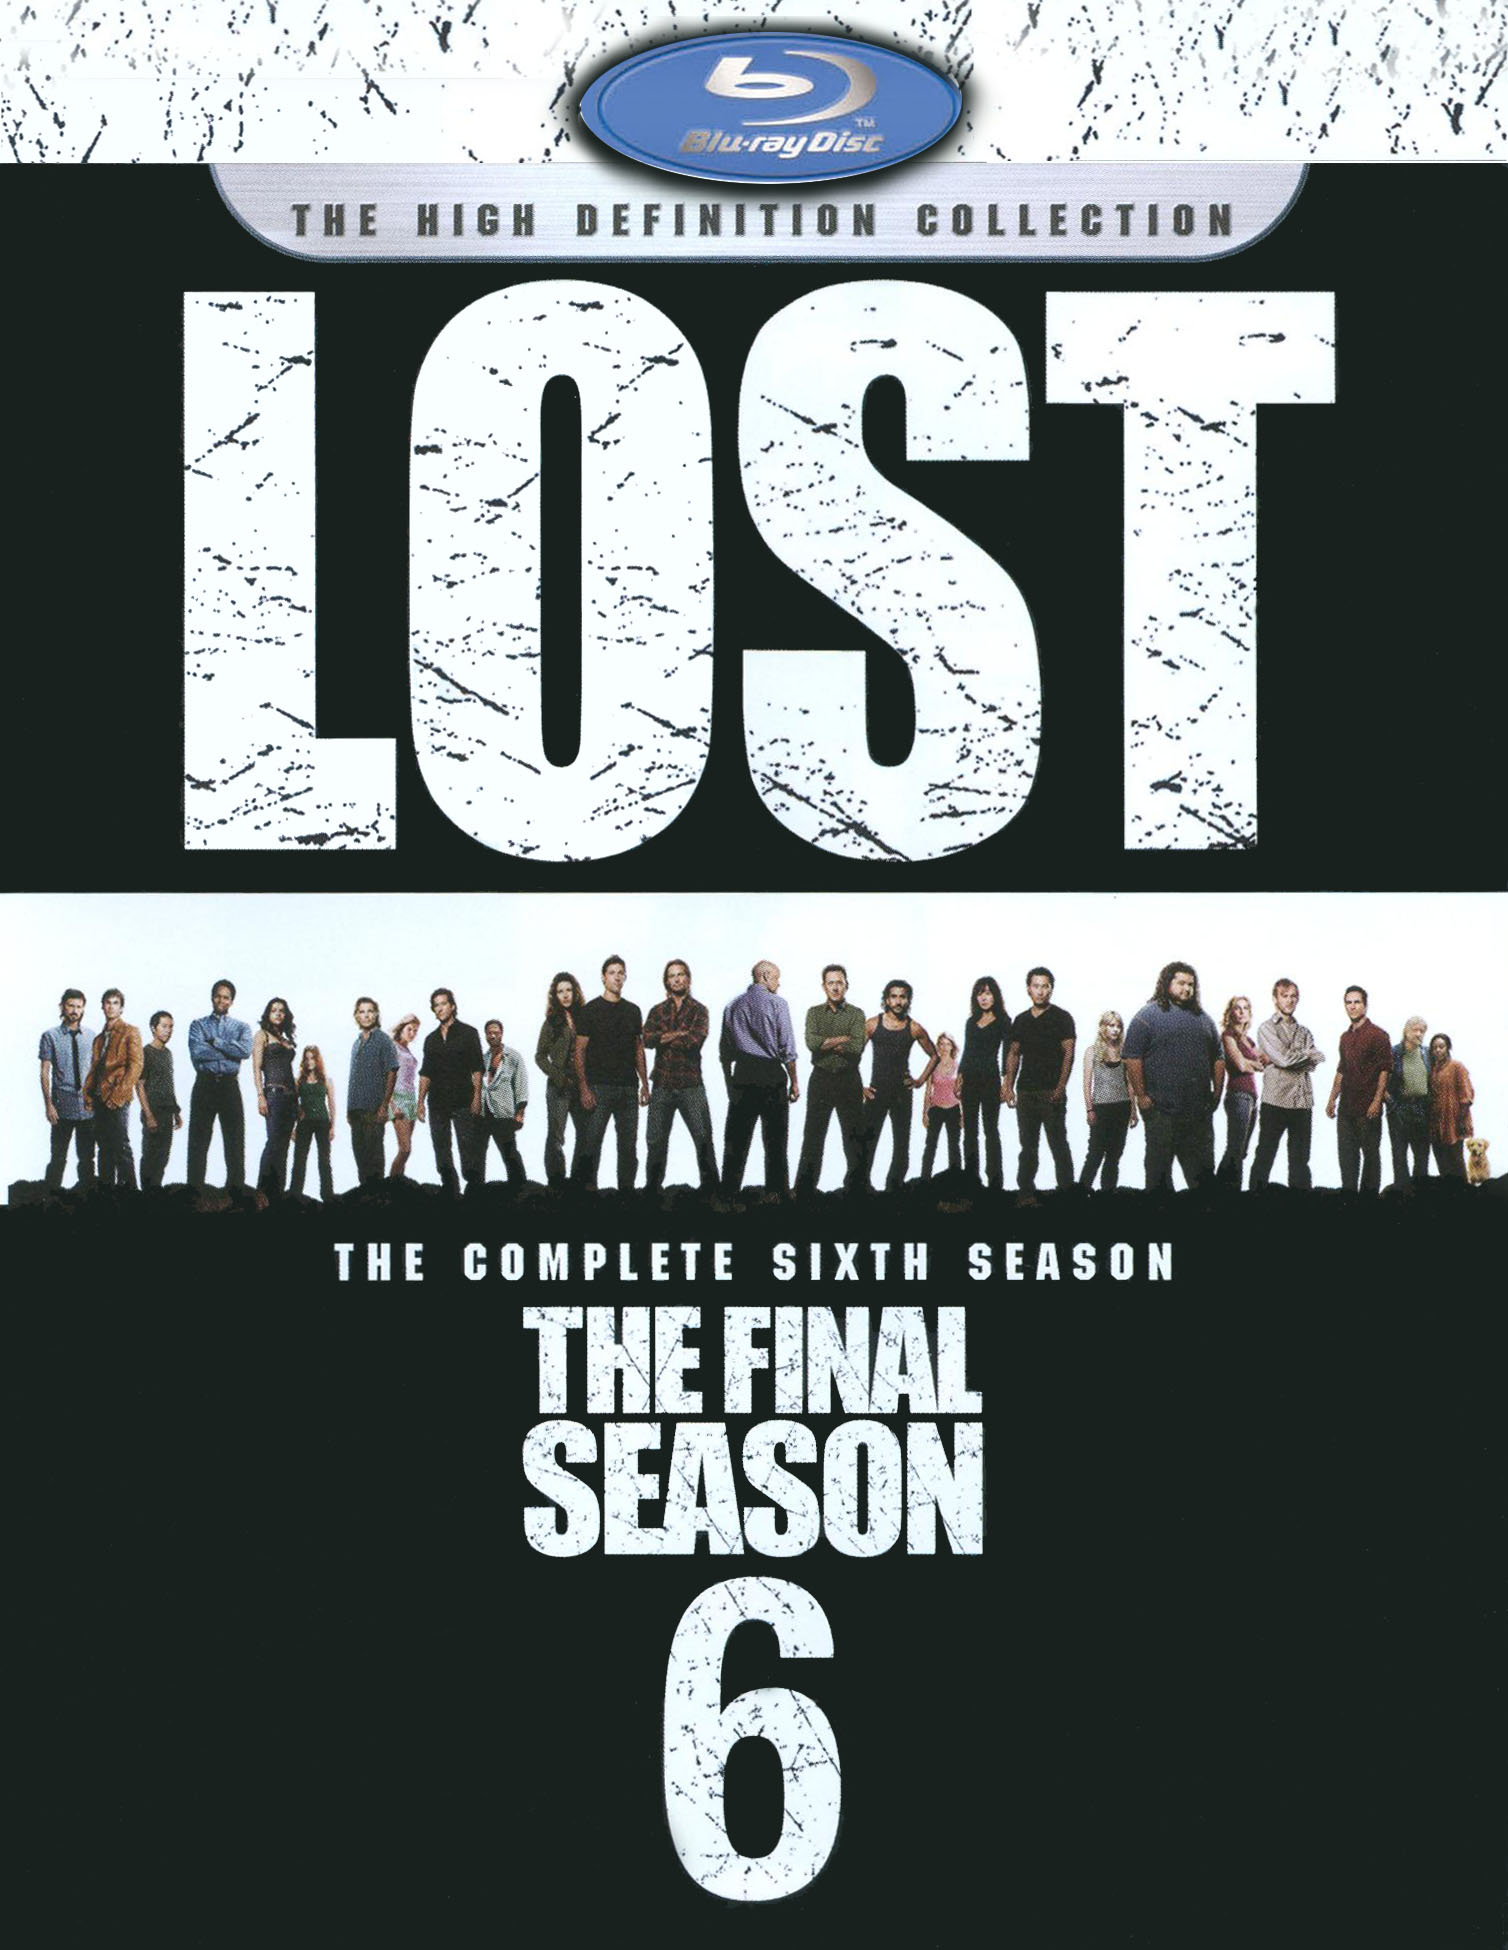 Telégrafo abrigo siguiente Lost: The Complete Sixth Season [5 Discs] [Blu-ray] - Best Buy